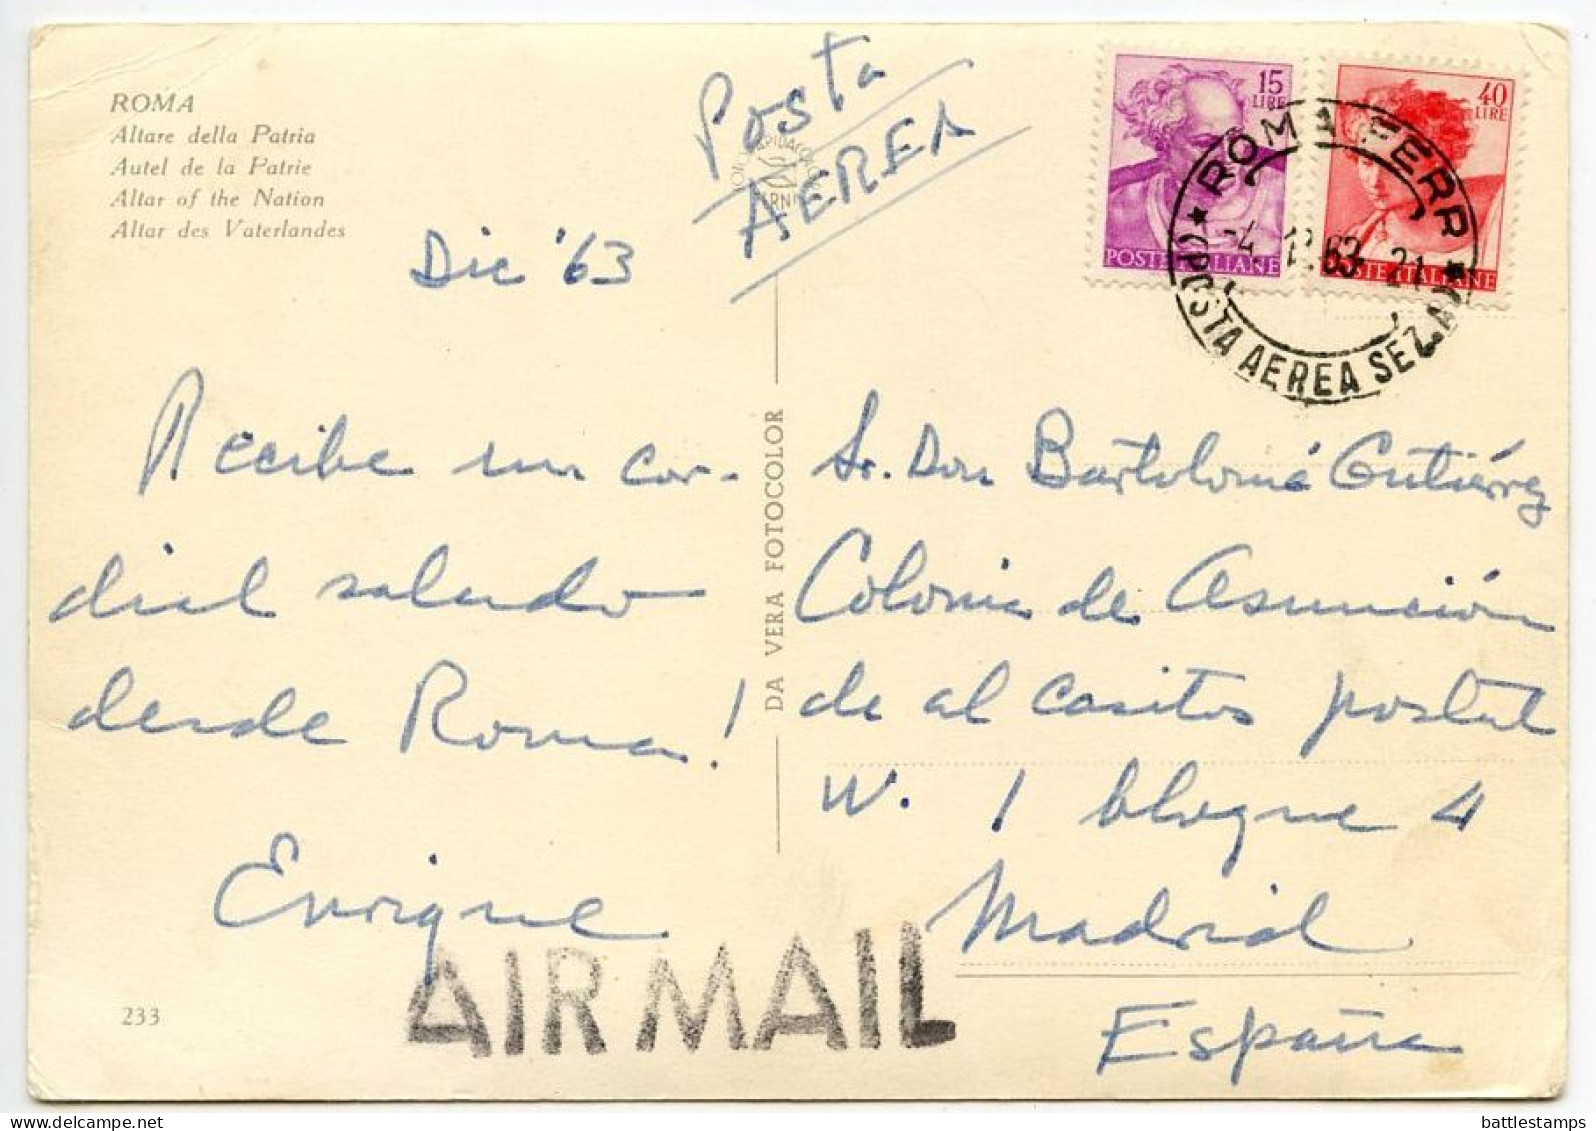 Italy 1963 Postcard Roma / Rome - Altare Della Patria; Airmail Postmark - Altare Della Patria